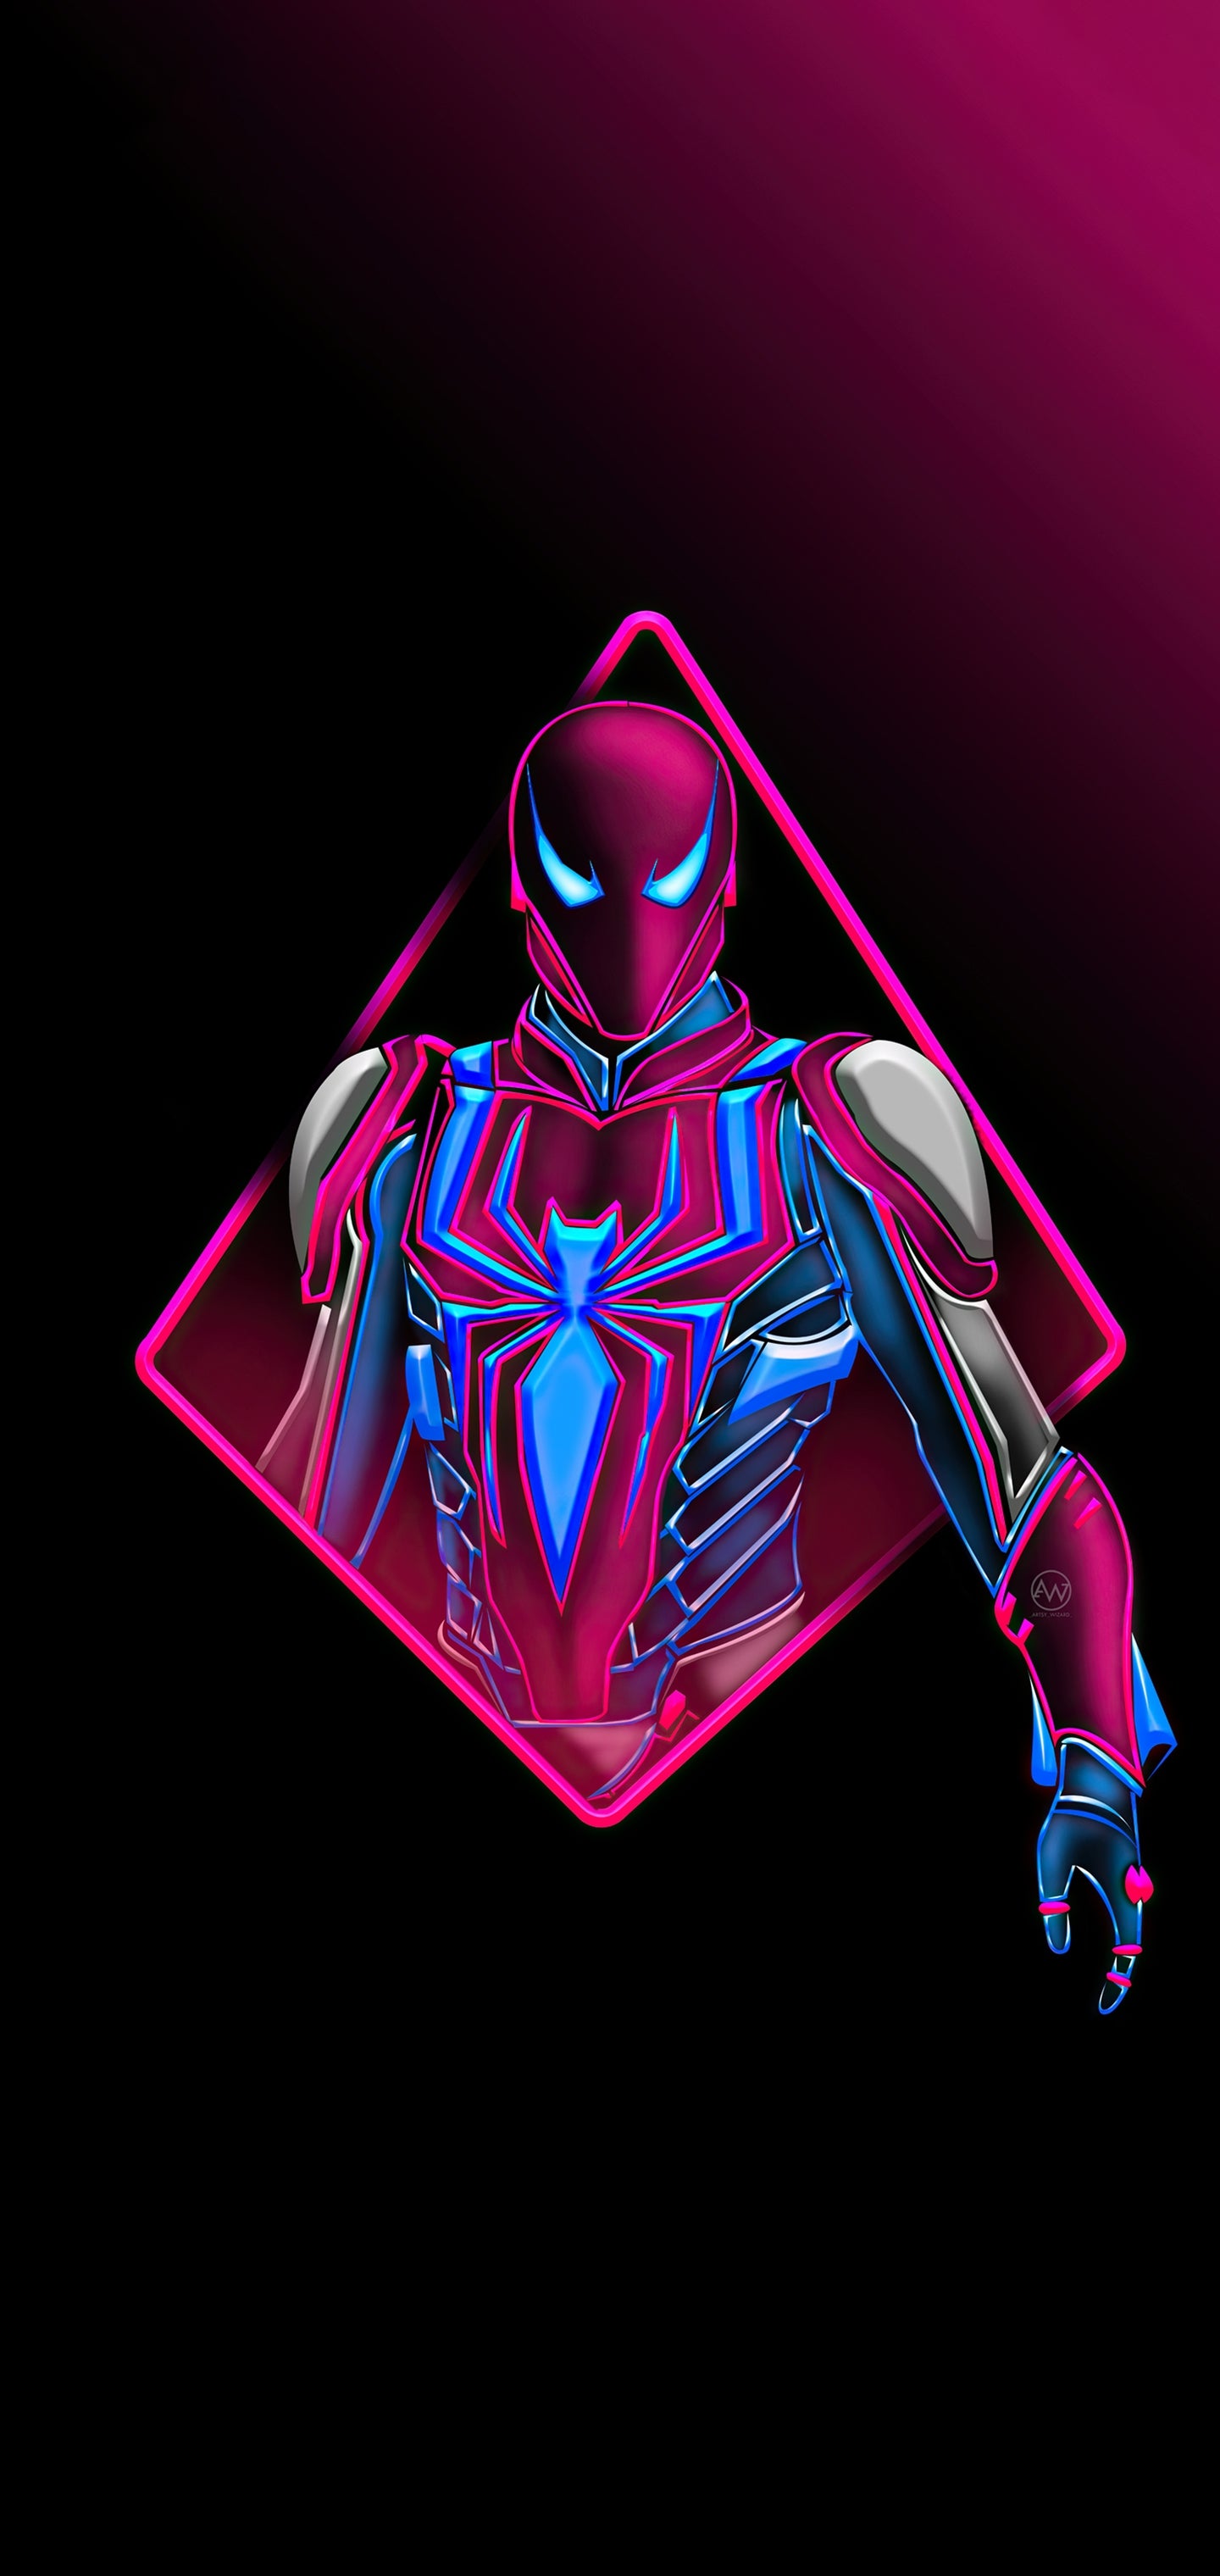 Wallpaper Spiderman Neon, Spider Man, Superhero, Venom, Art, Background Free Image